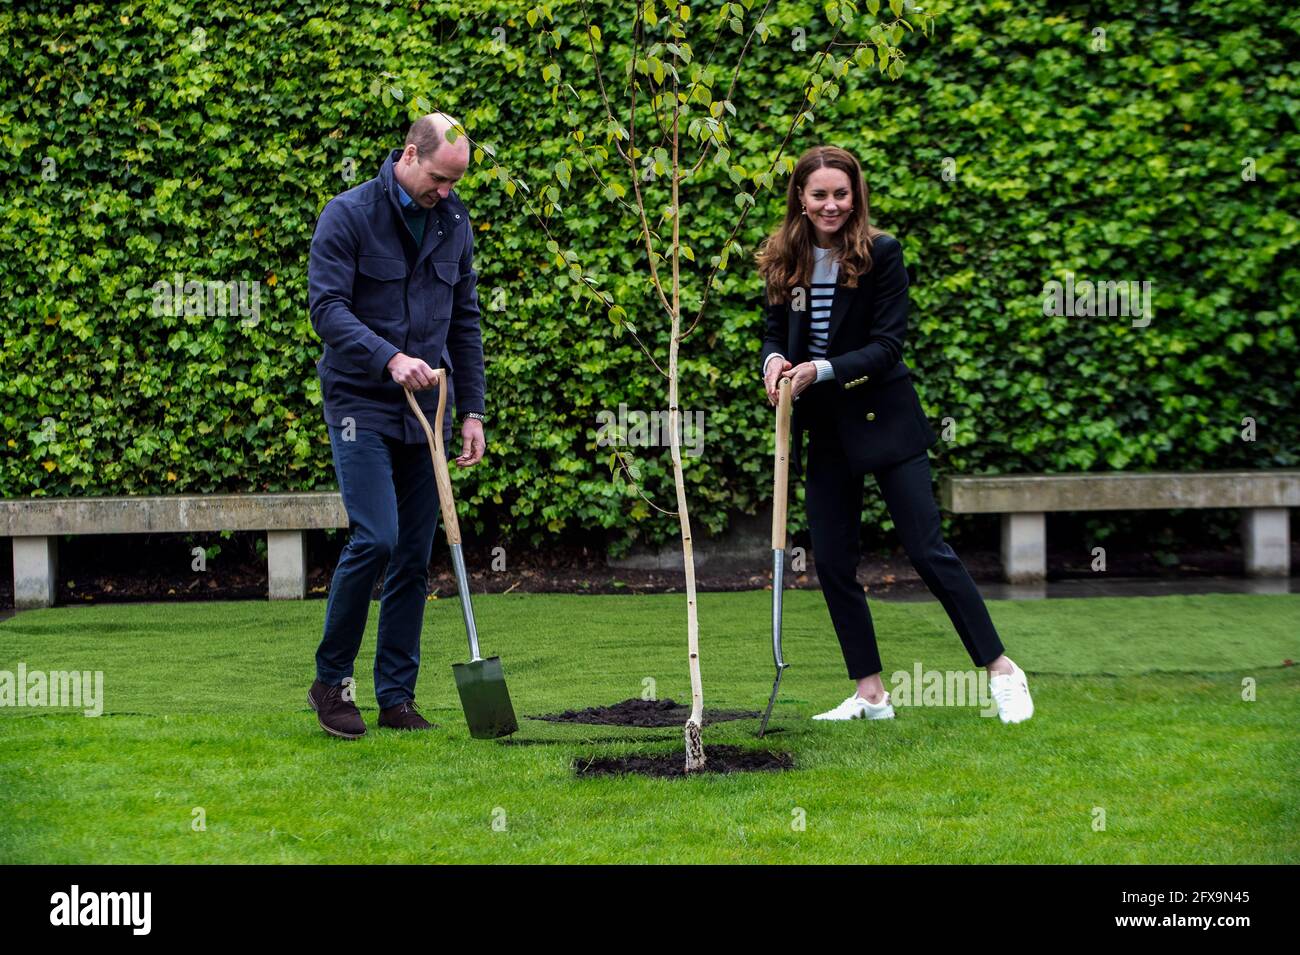 Der Herzog und die Herzogin von Cambridge Pflanzen bei einem Besuch der University of St Andrews einen Baum, um Studenten zu treffen und zu erfahren, wie sie und die Universität einander durch die COVID-19-Pandemie unterstützt haben. Bilddatum: Mittwoch, 26. Mai 2021. Stockfoto